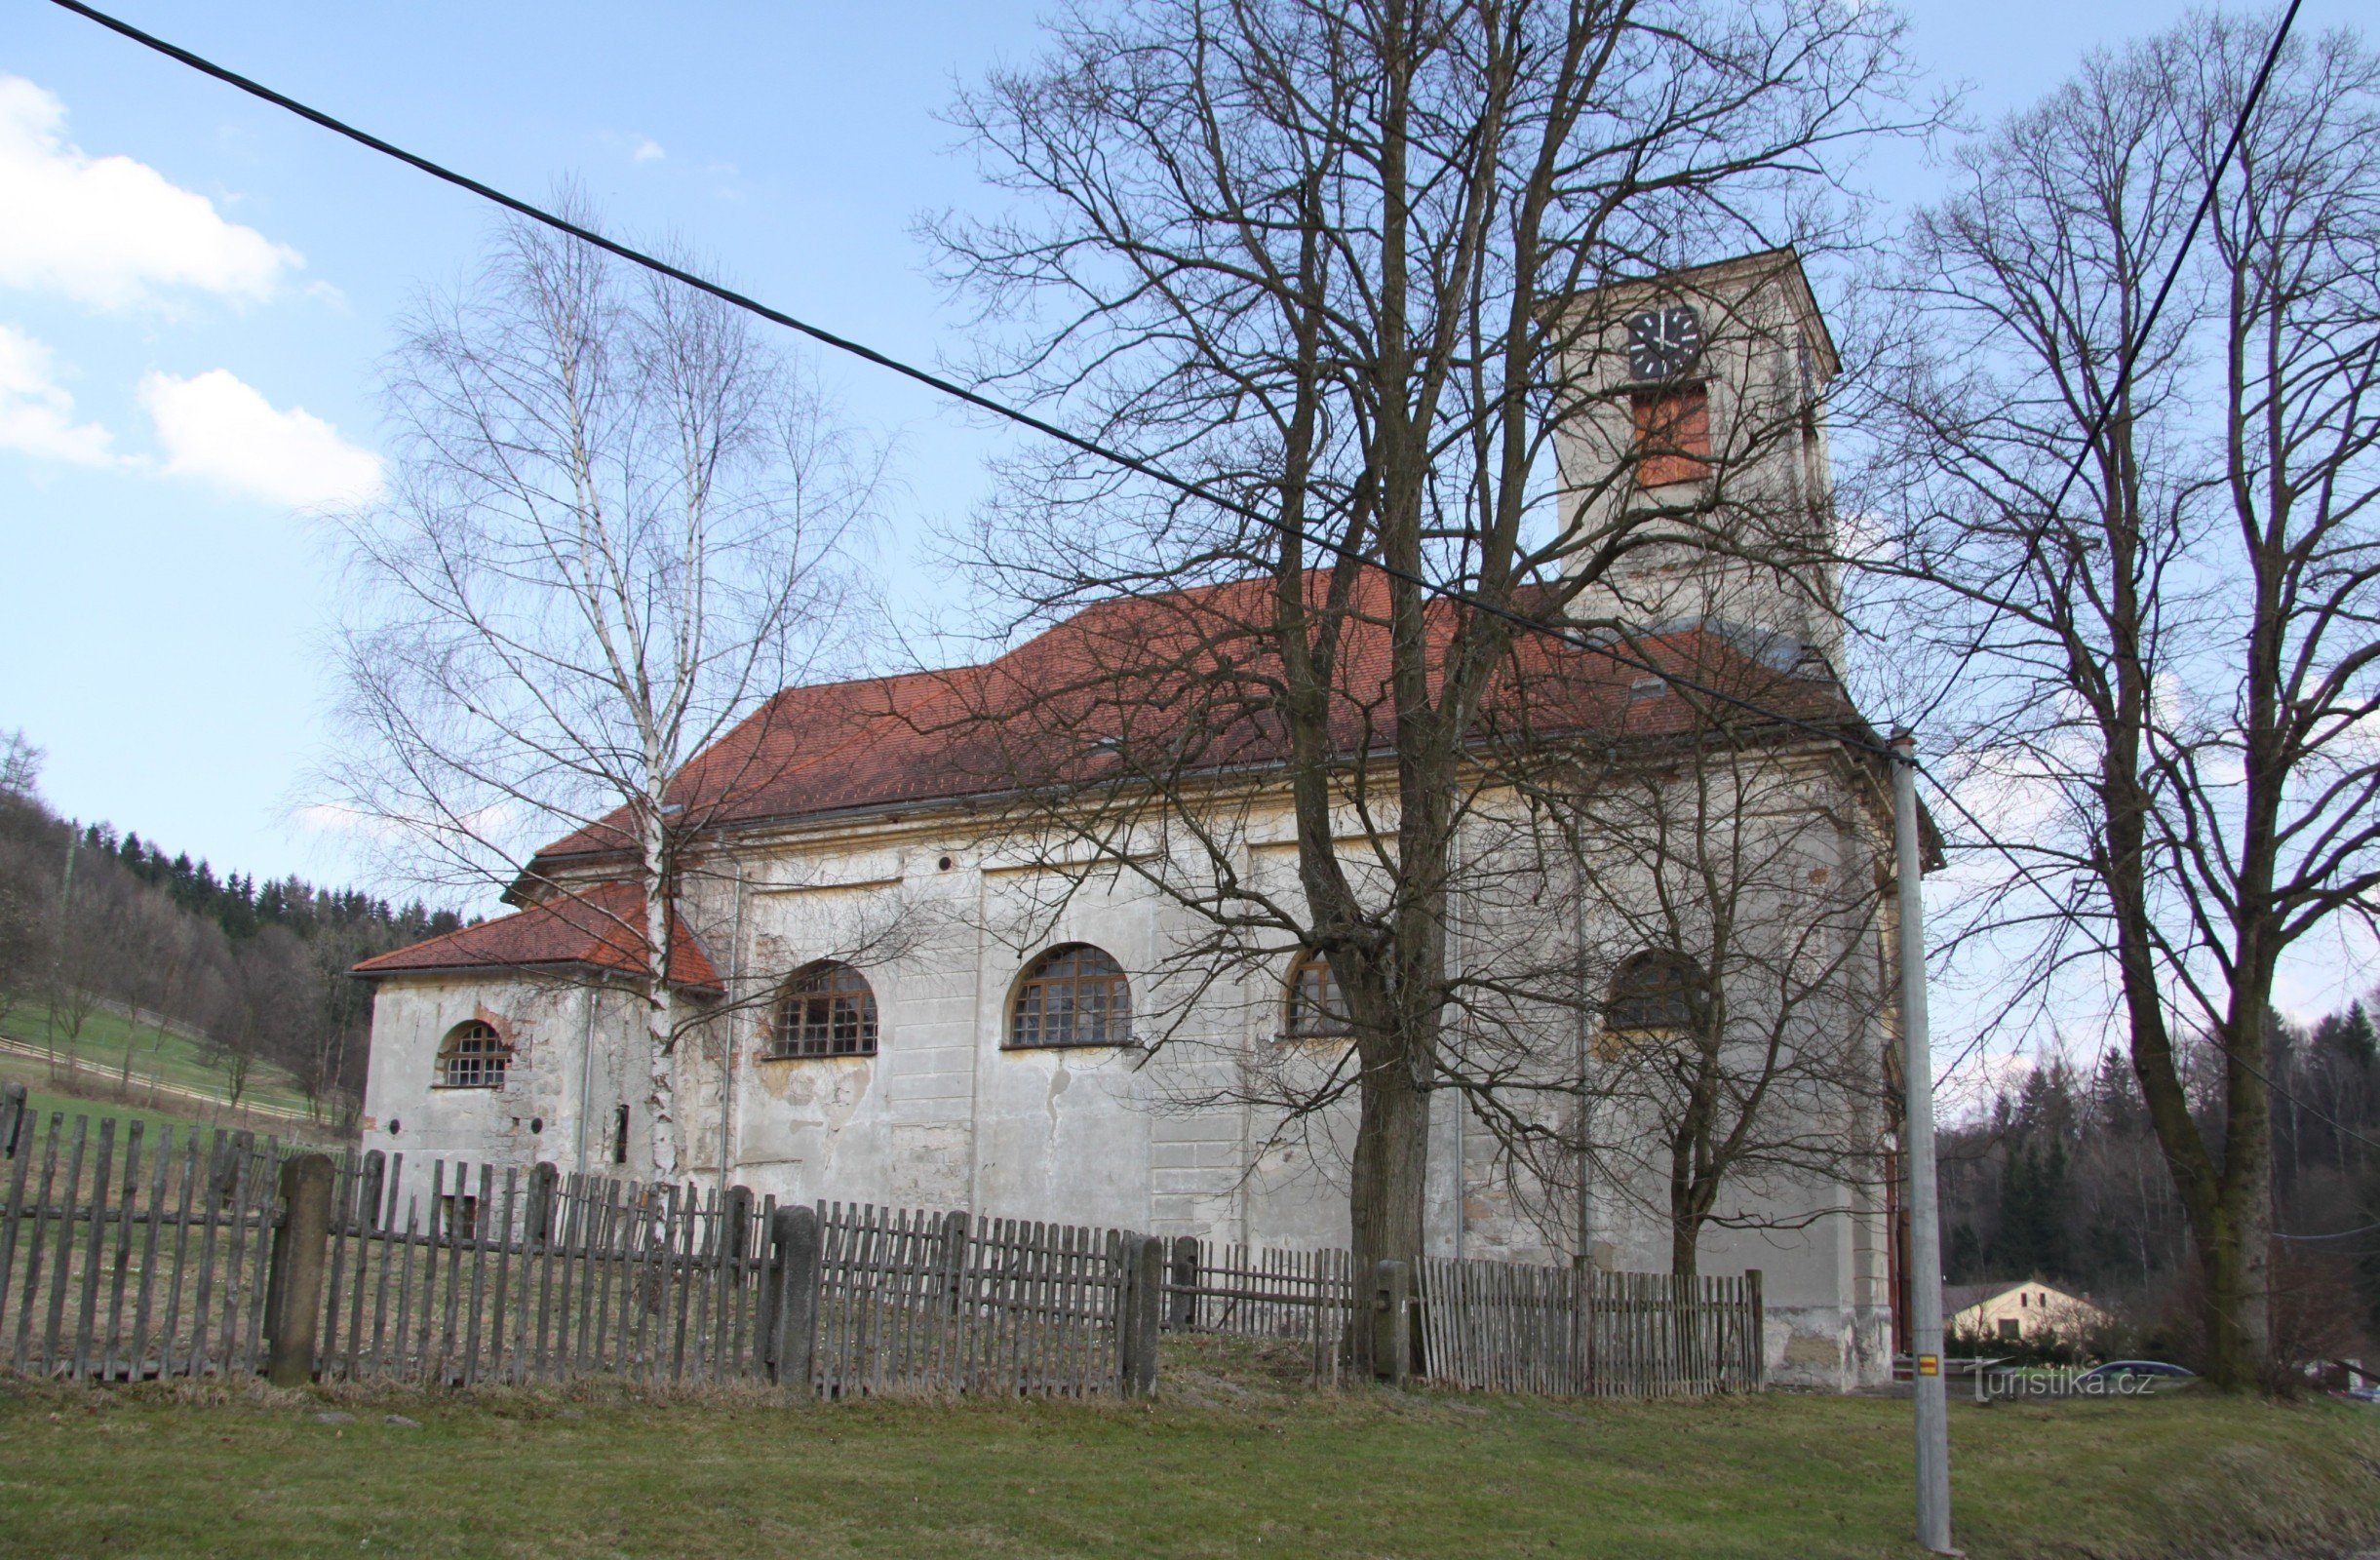 Église de l'Ascension de St. Croix à Adršpach